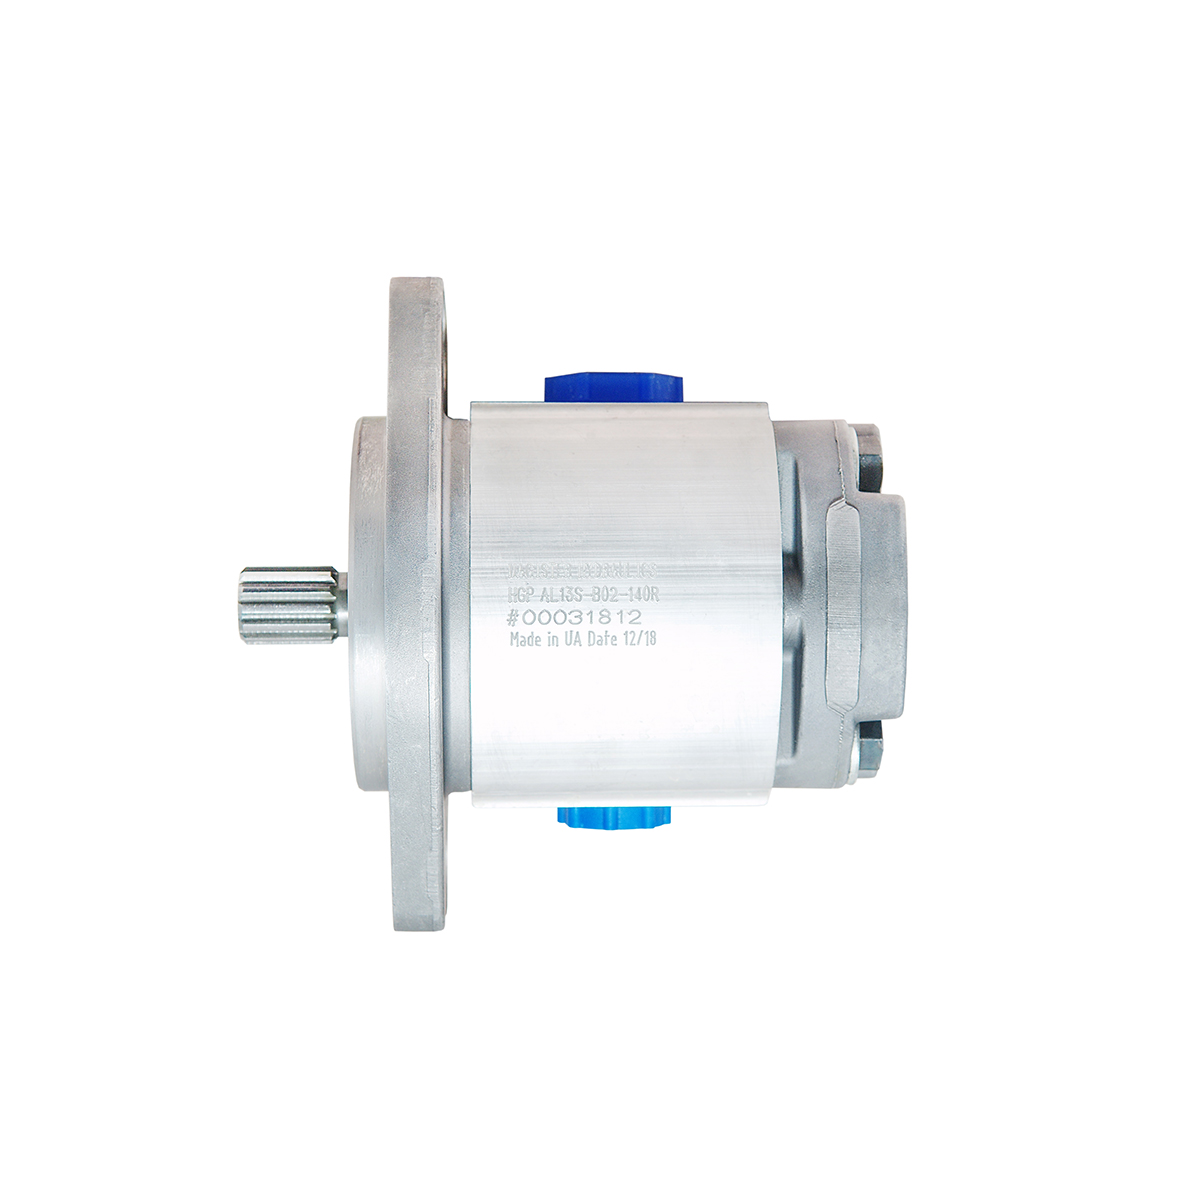 2.32 CID hydraulic gear pump, 13 tooth spline shaft clockwise gear pump | Magister Hydraulics